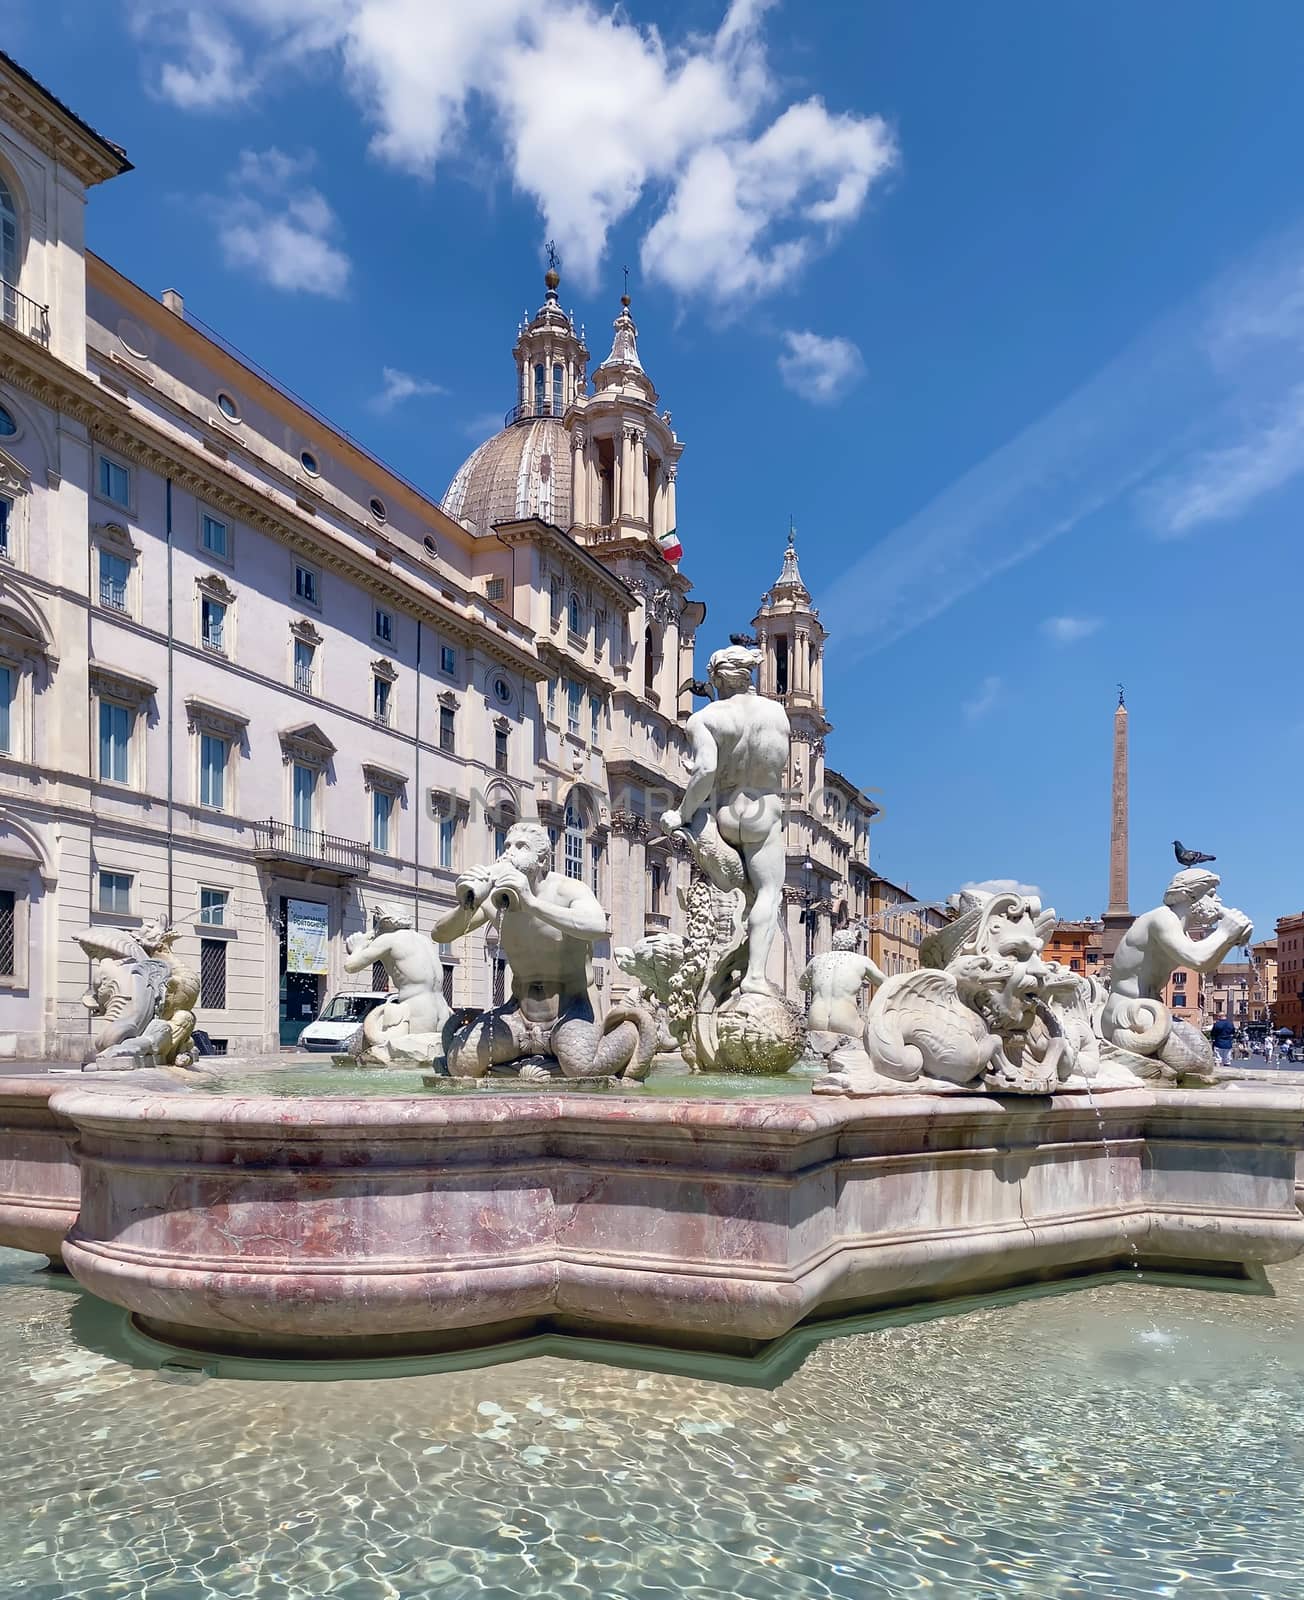 Piazza Navona in Rome on a sunny day by rarrarorro